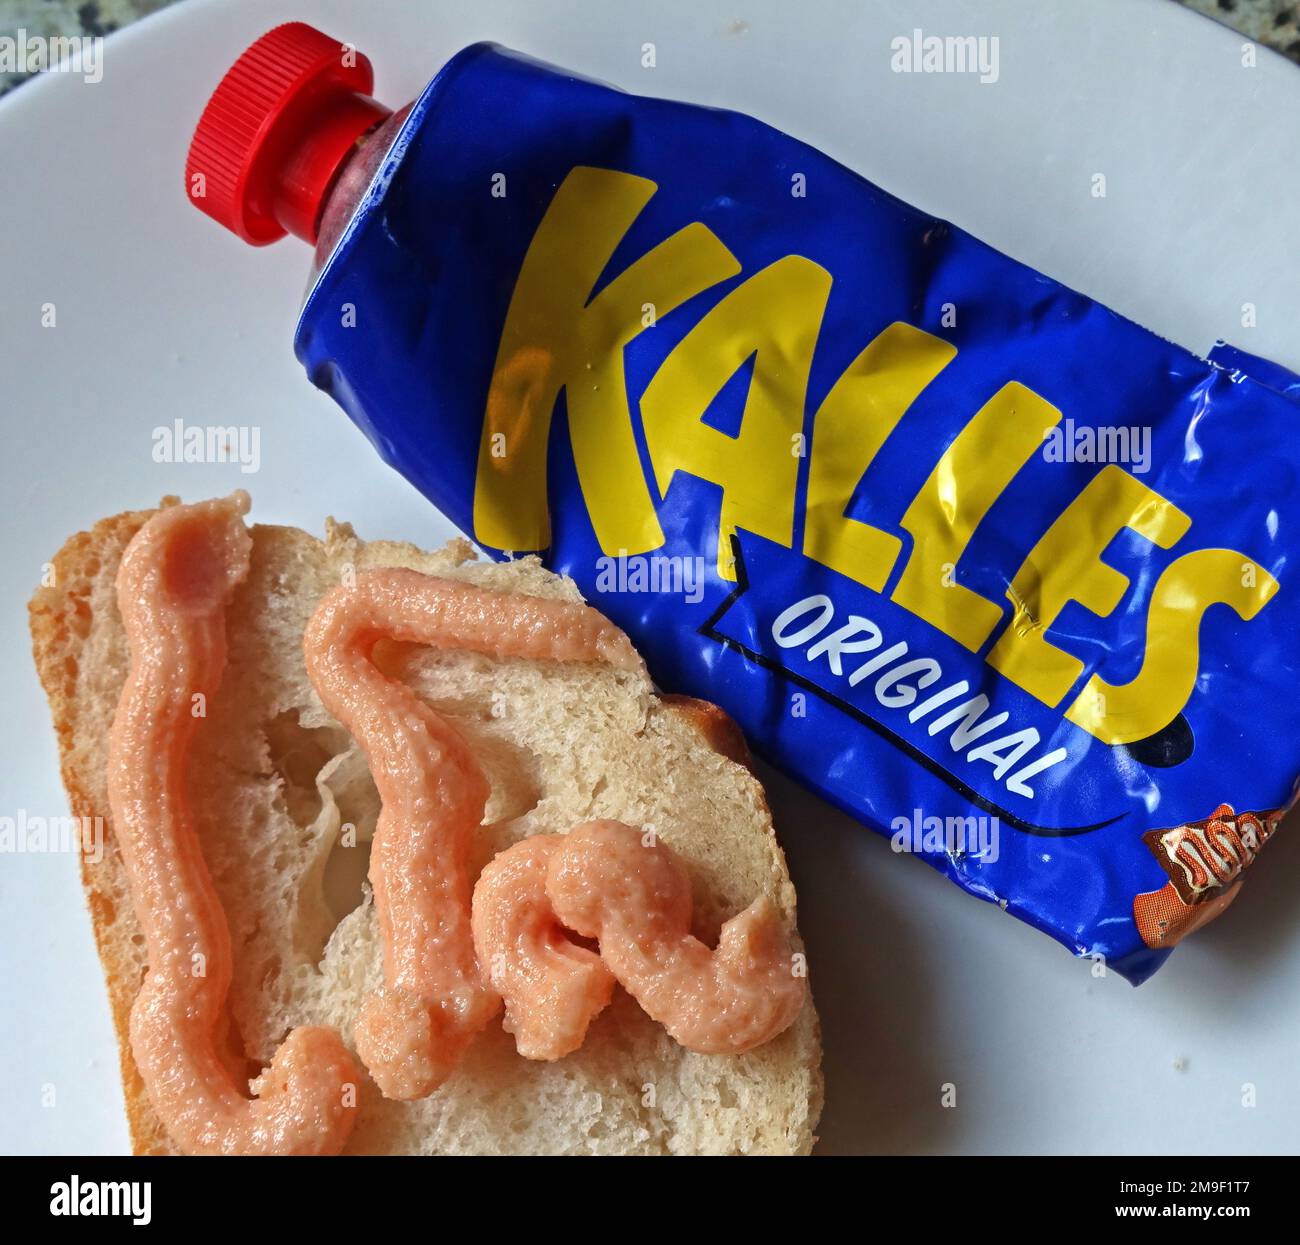 Tube bleu de Kalles Original, salé roe de morue (gadus morhua), sucre, huile de canola et épices, écuré sur du pain frais, suédois IKEA Food Banque D'Images